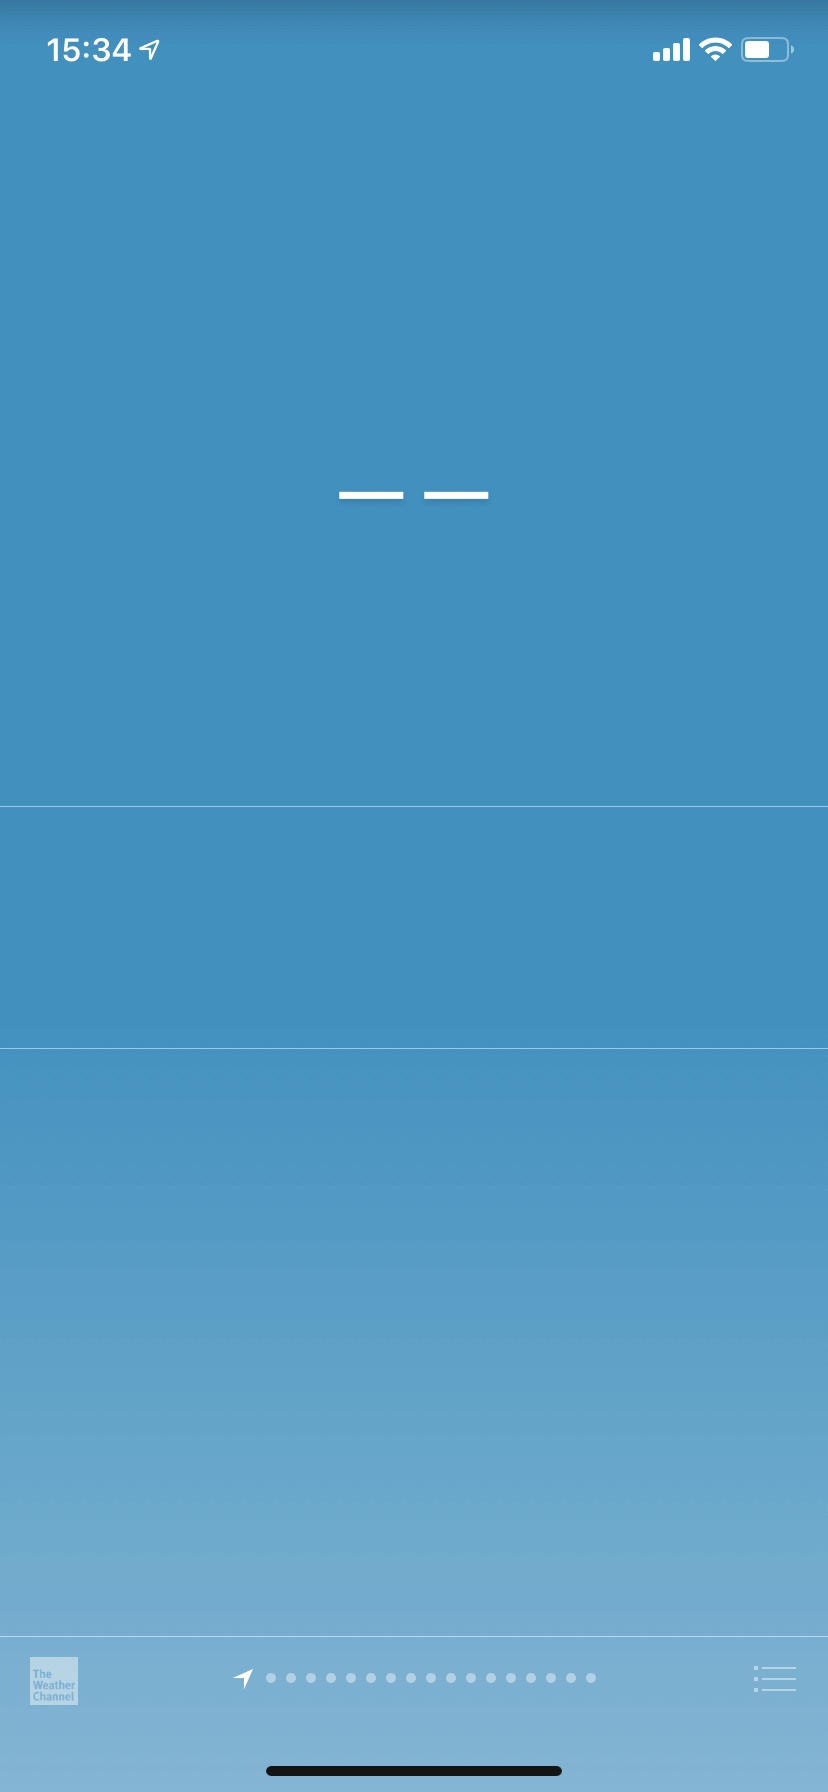 ОБНОВЛЕНО: Приложение «Погода» сломалось на iOS 12.3. Как теперь быть? Фото.